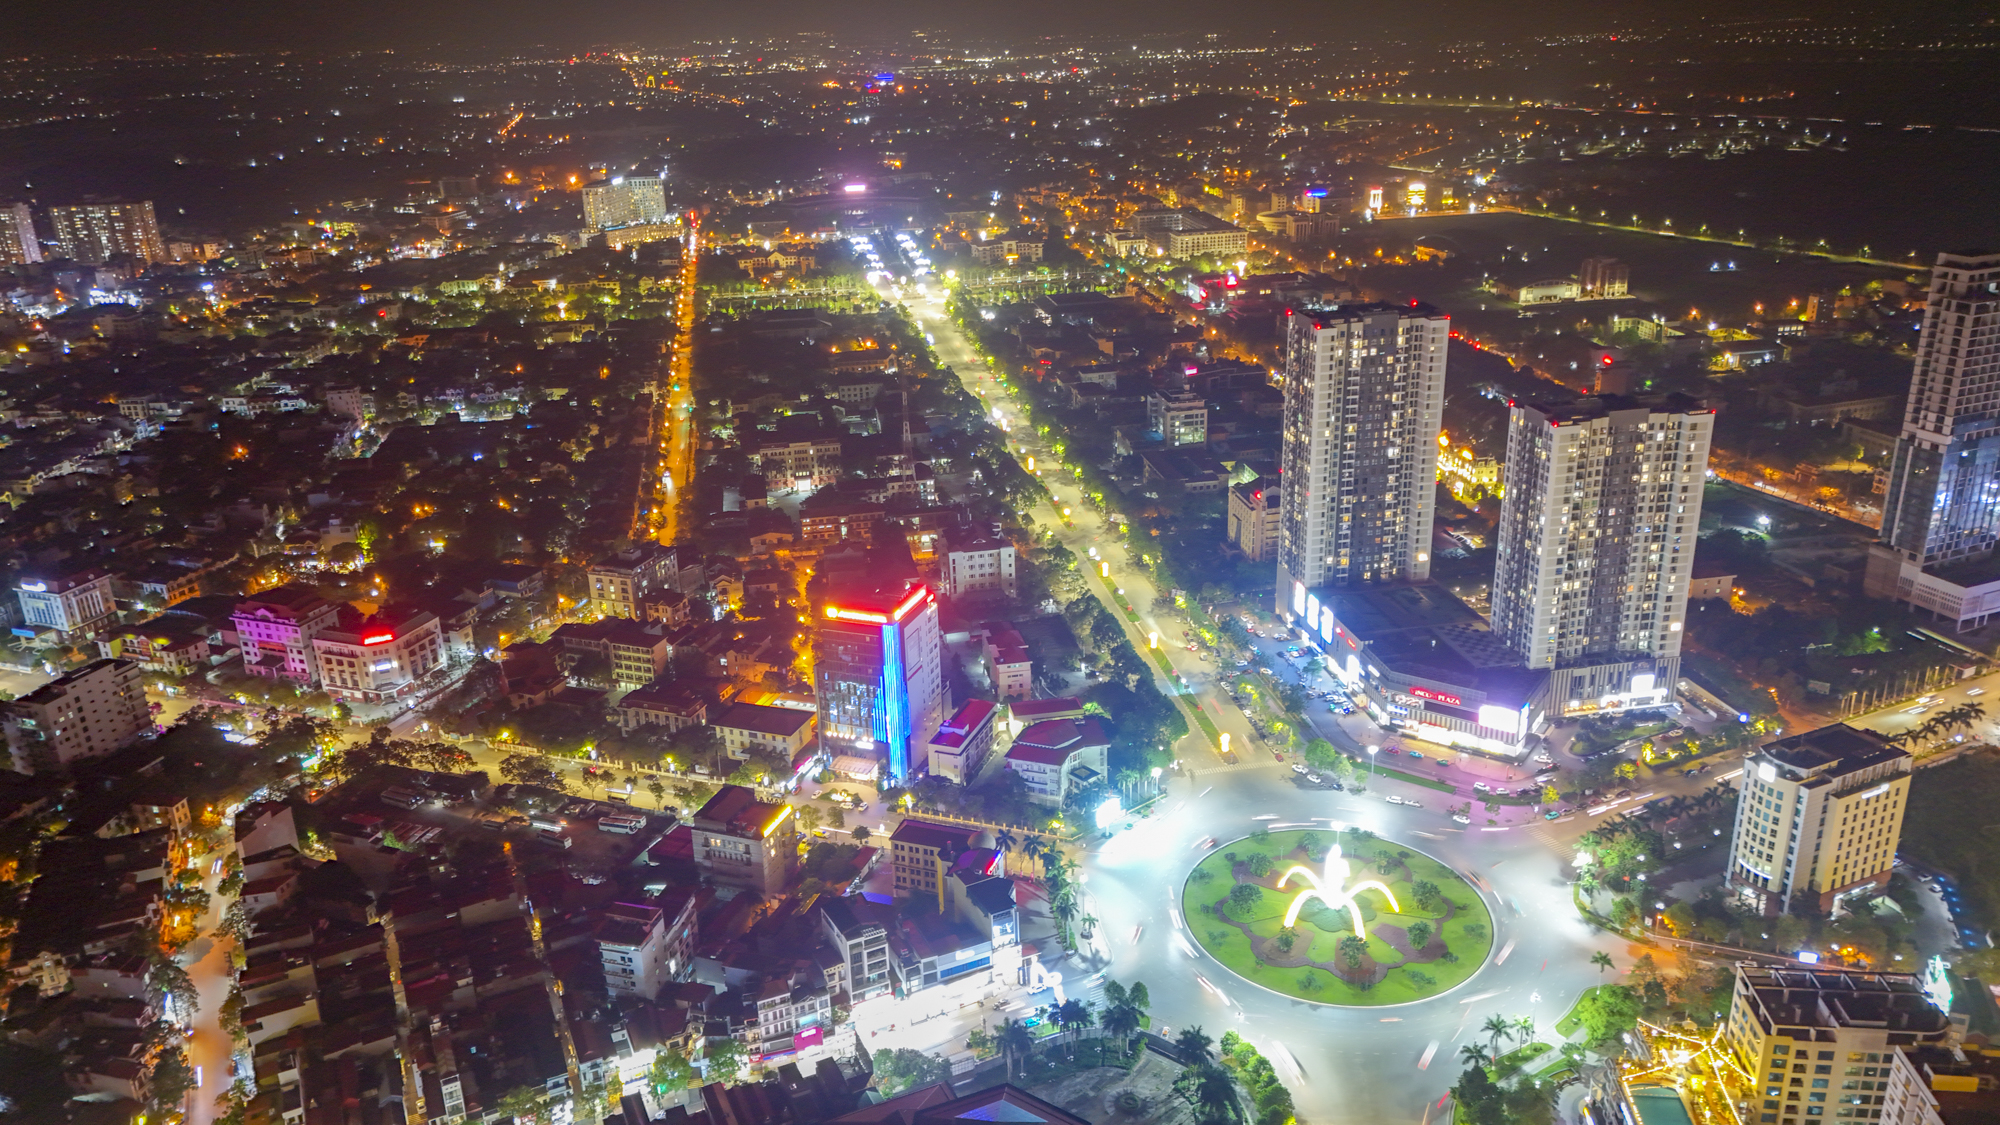 Khu vực trung tâm của trung tâm tỉnh sắp lên thành phố: Có khu hành chính độc đáo bậc nhất Việt Nam; Vingroup, Vietcombank phô diễn vị thế- Ảnh 11.